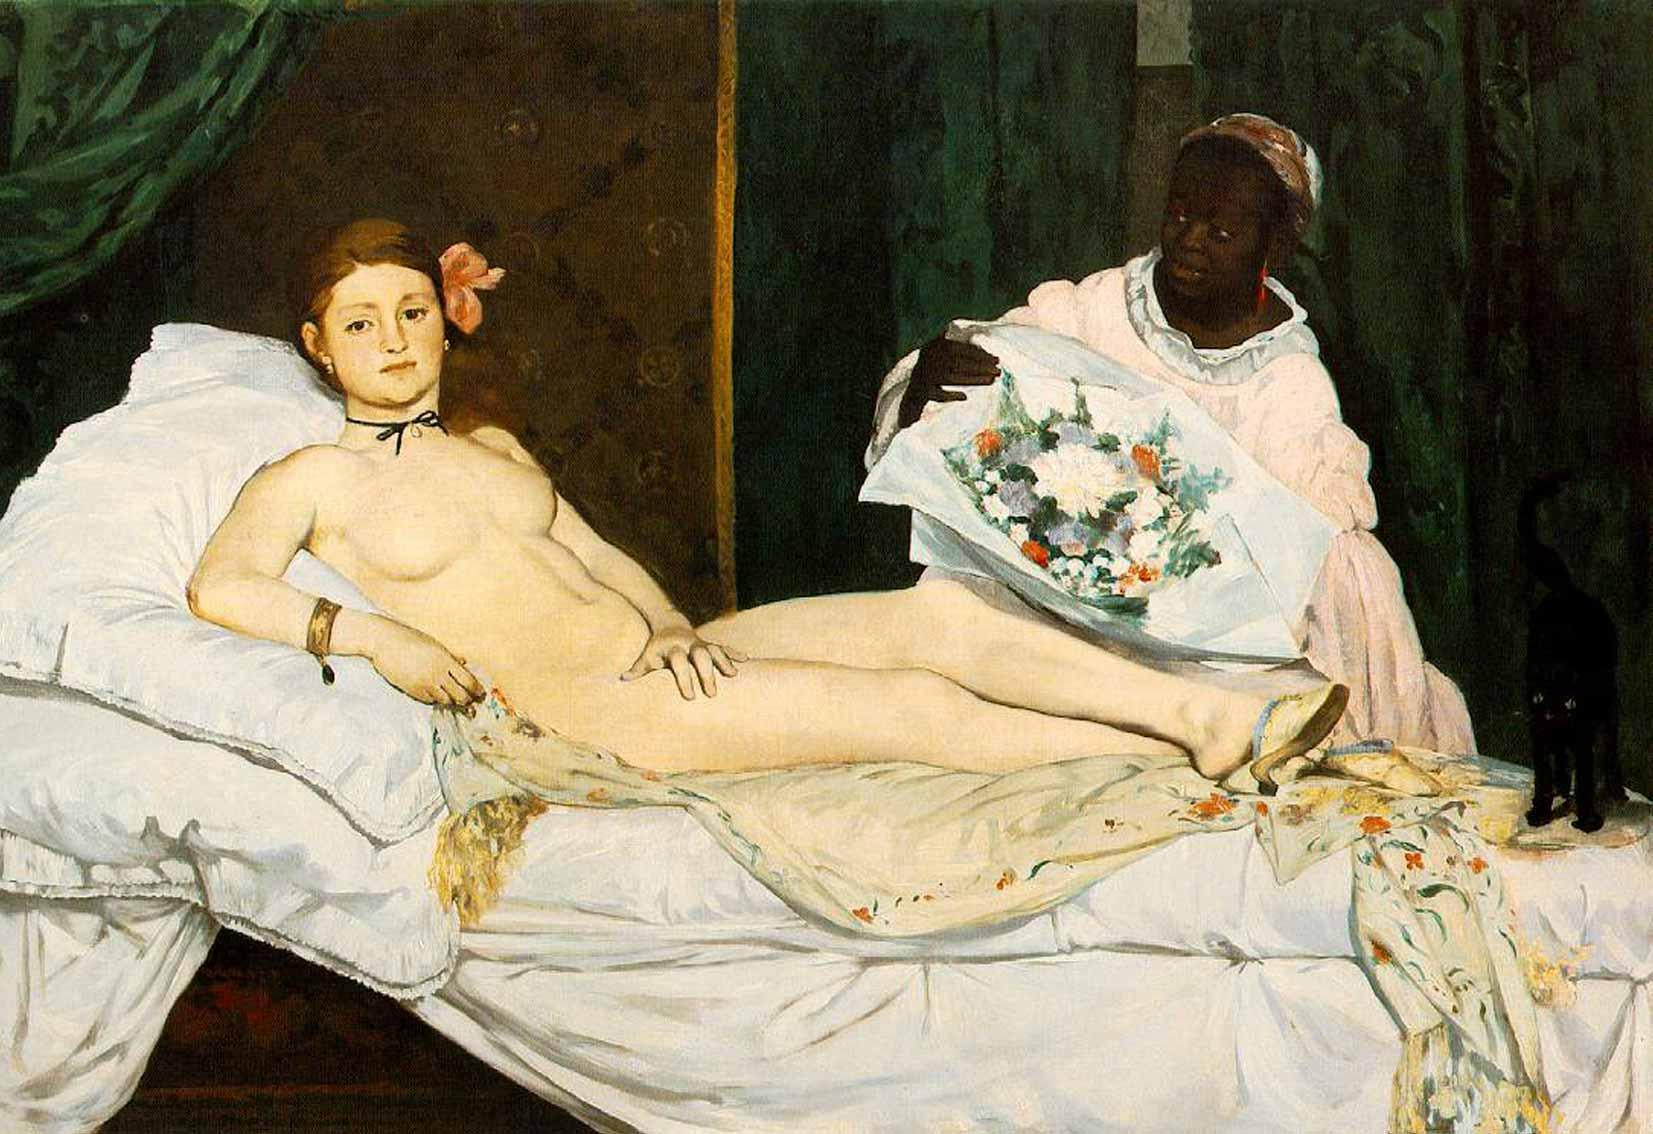 Édouard Manet, Olympia, 1863. Oil on canvas.